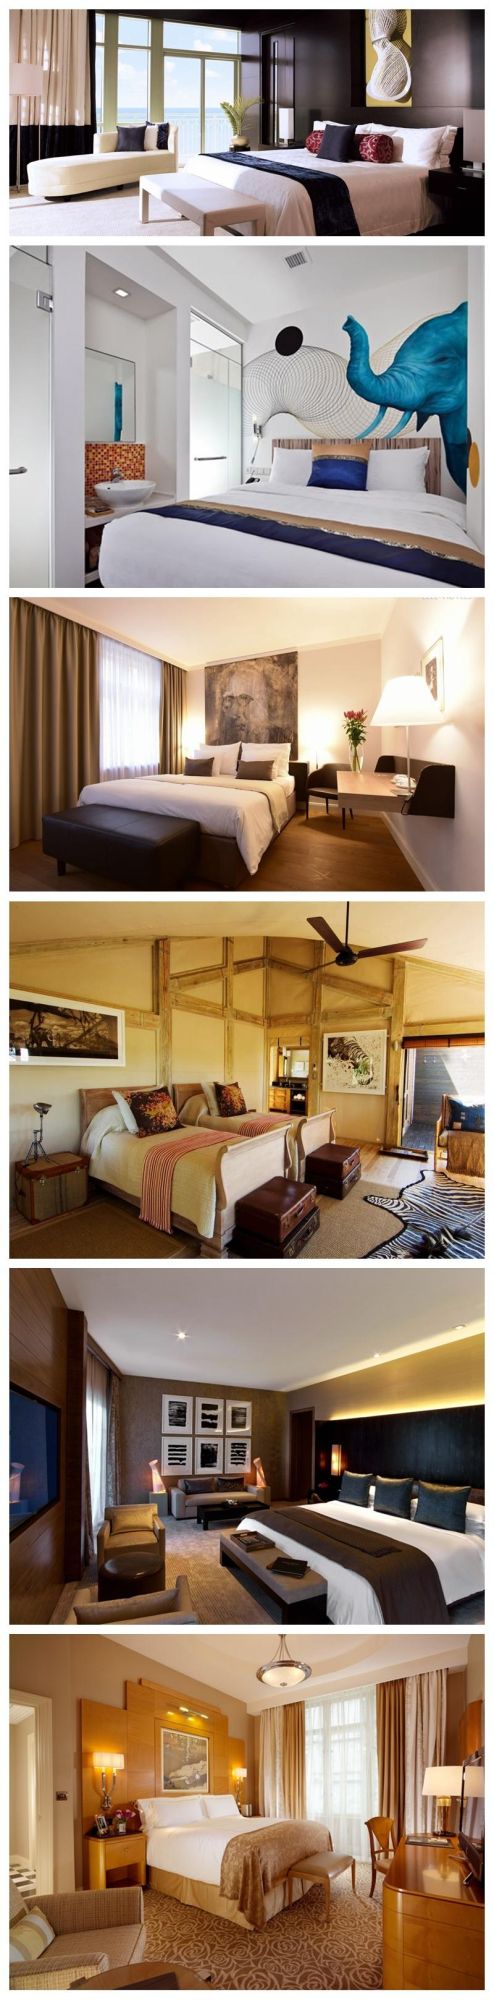 Artistical Design Elegant Style Hotel Bedroom Furniture Sets for Sale